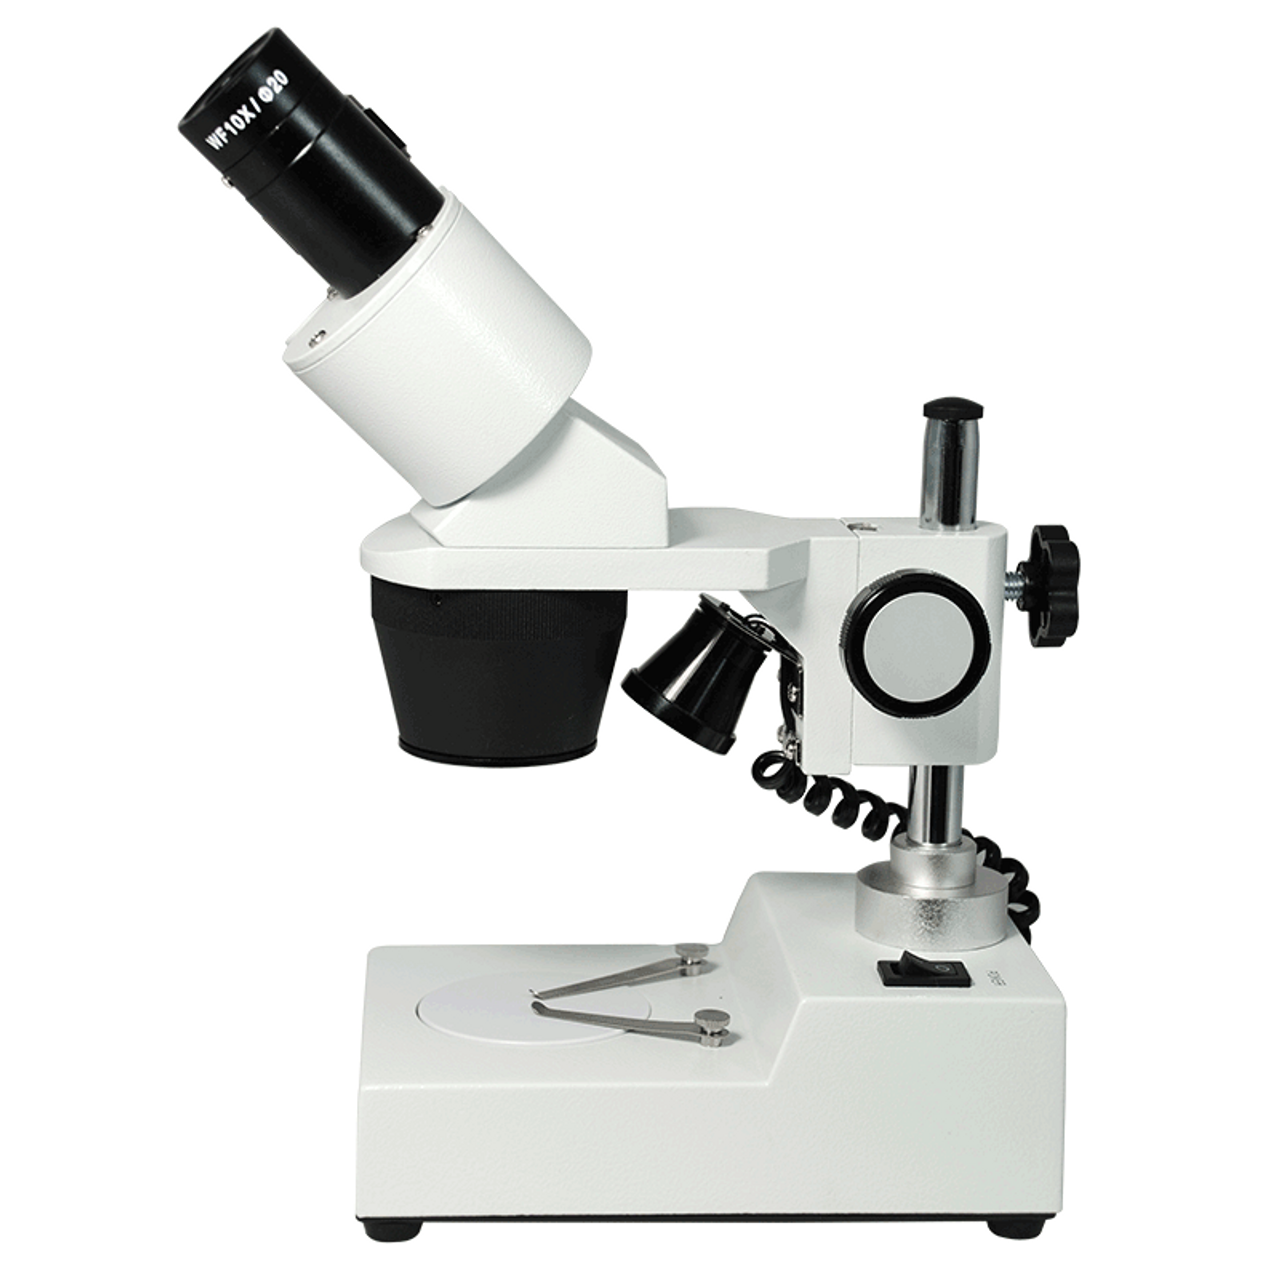 BoliOptics Microscope Dust Cover (Small) MA02022102